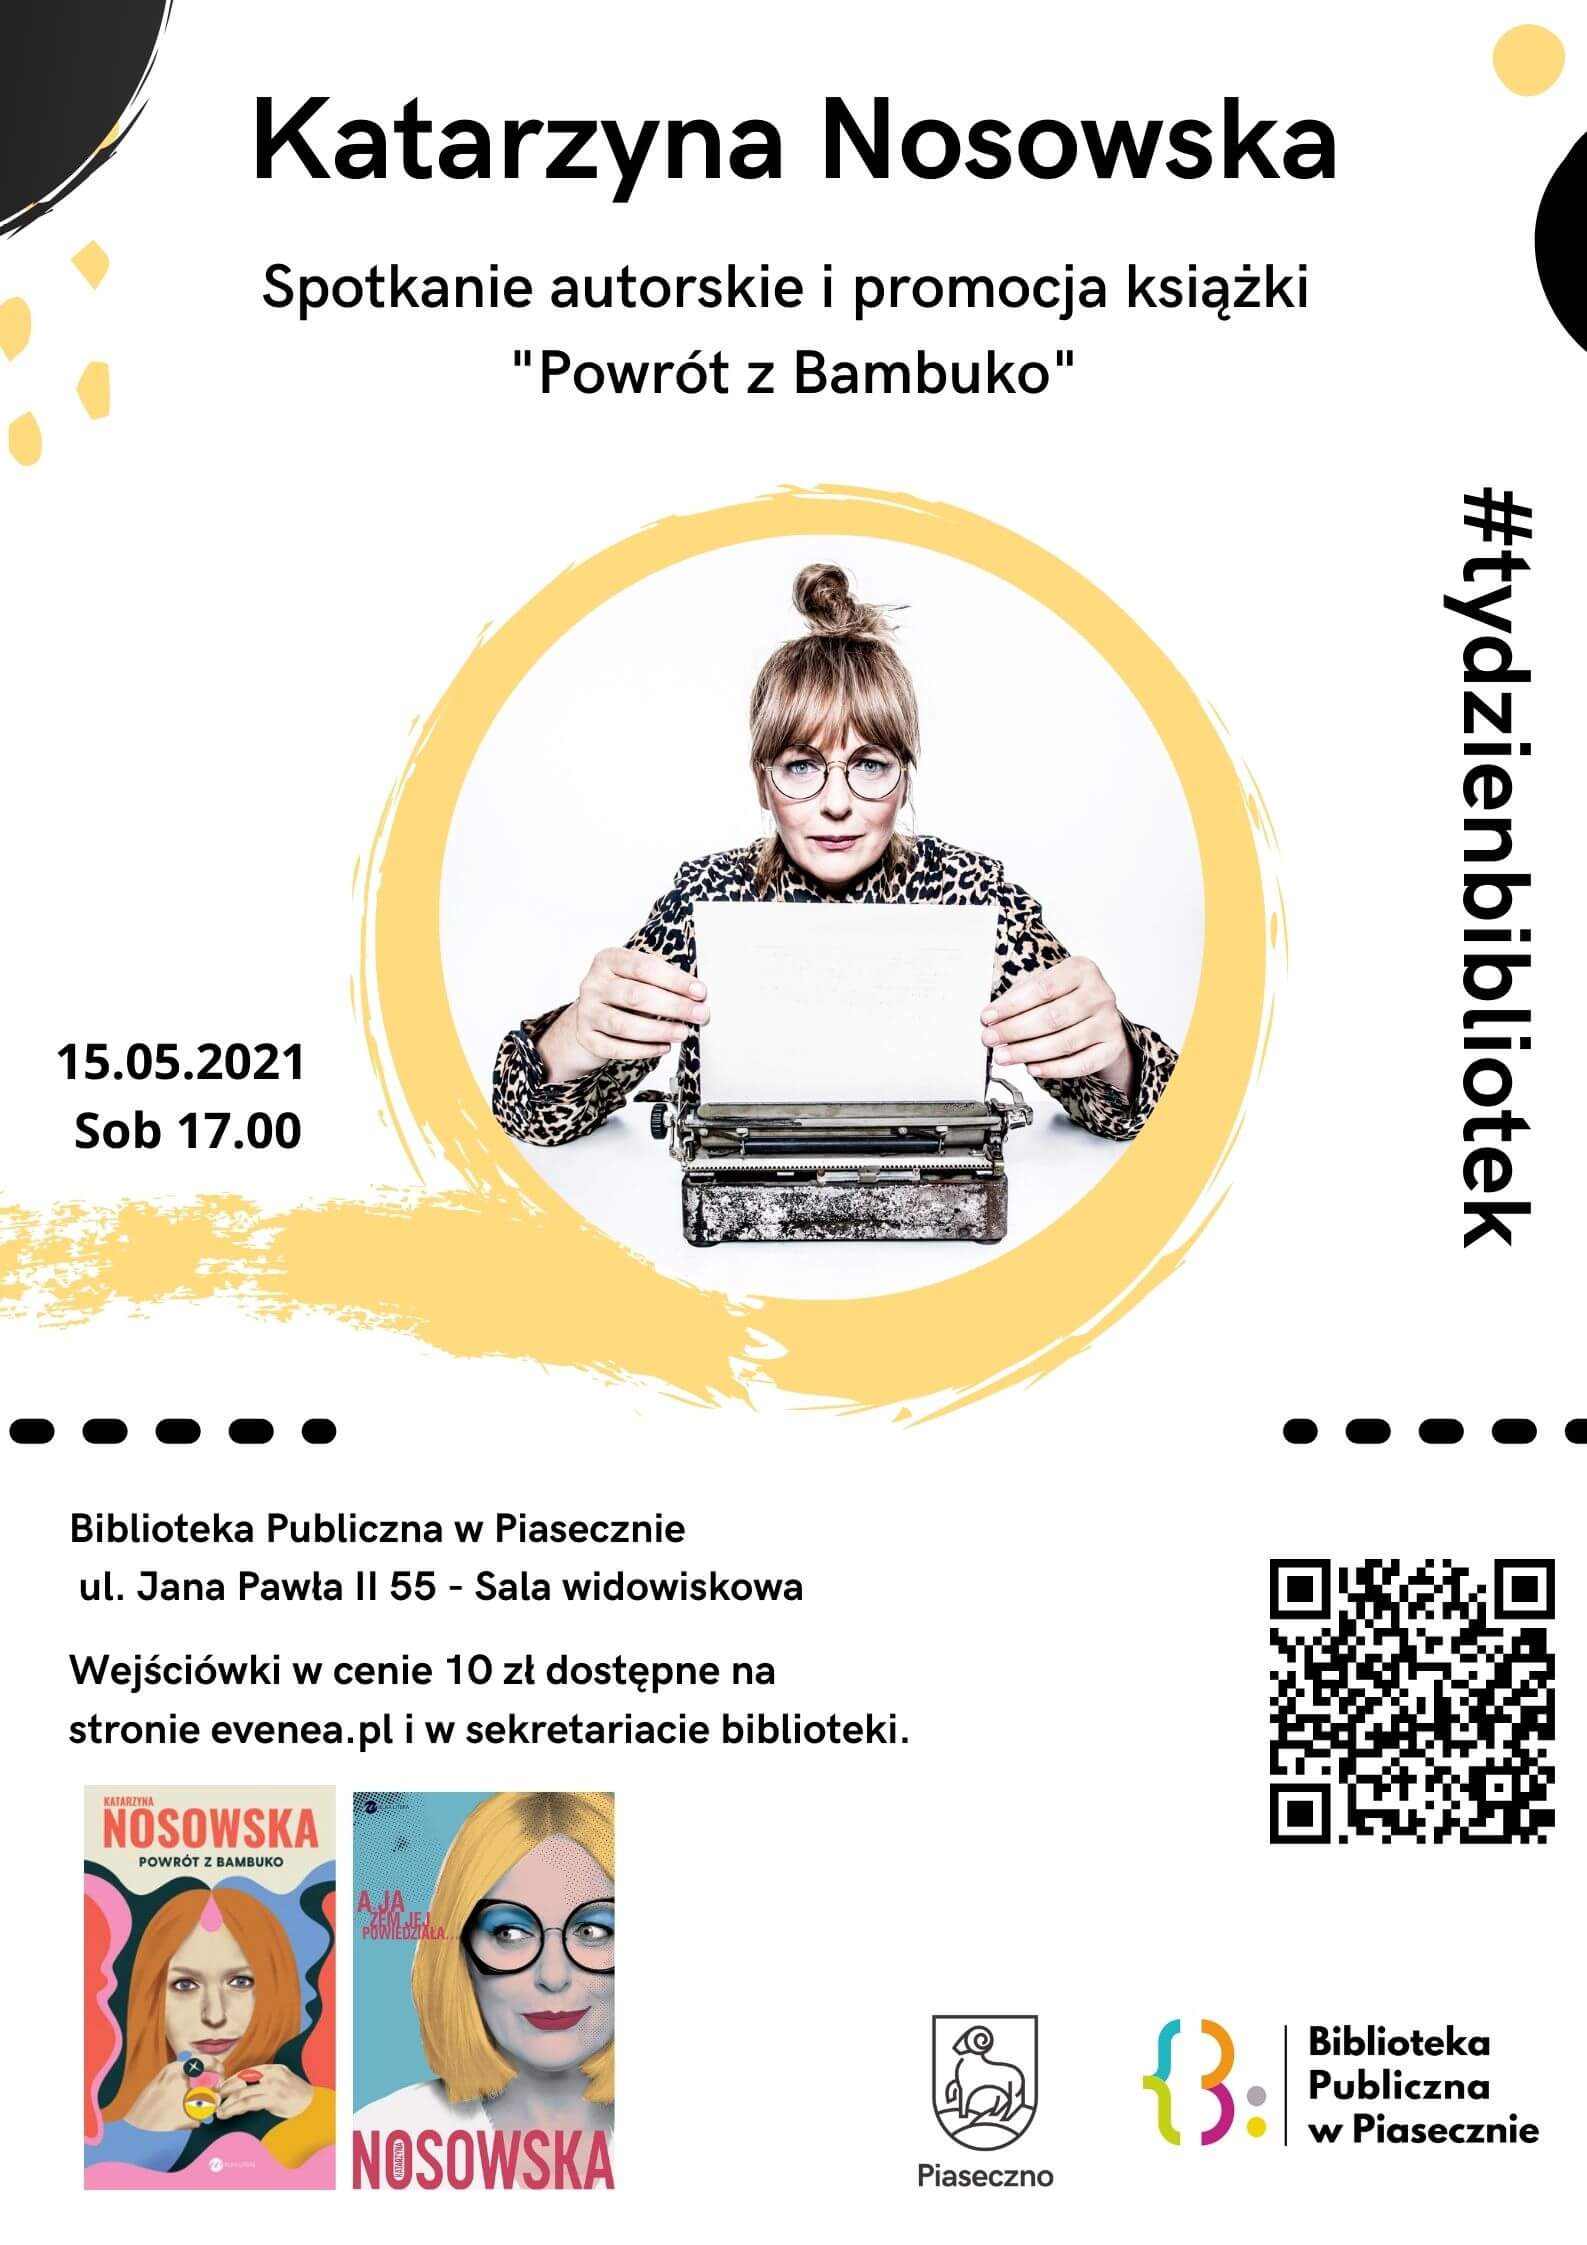 Plakat z Katarzyną Nosowską promujący spotkanie autorskie, które odbędzie się dnia 15 maja 2021 roku o godzinie 17:00